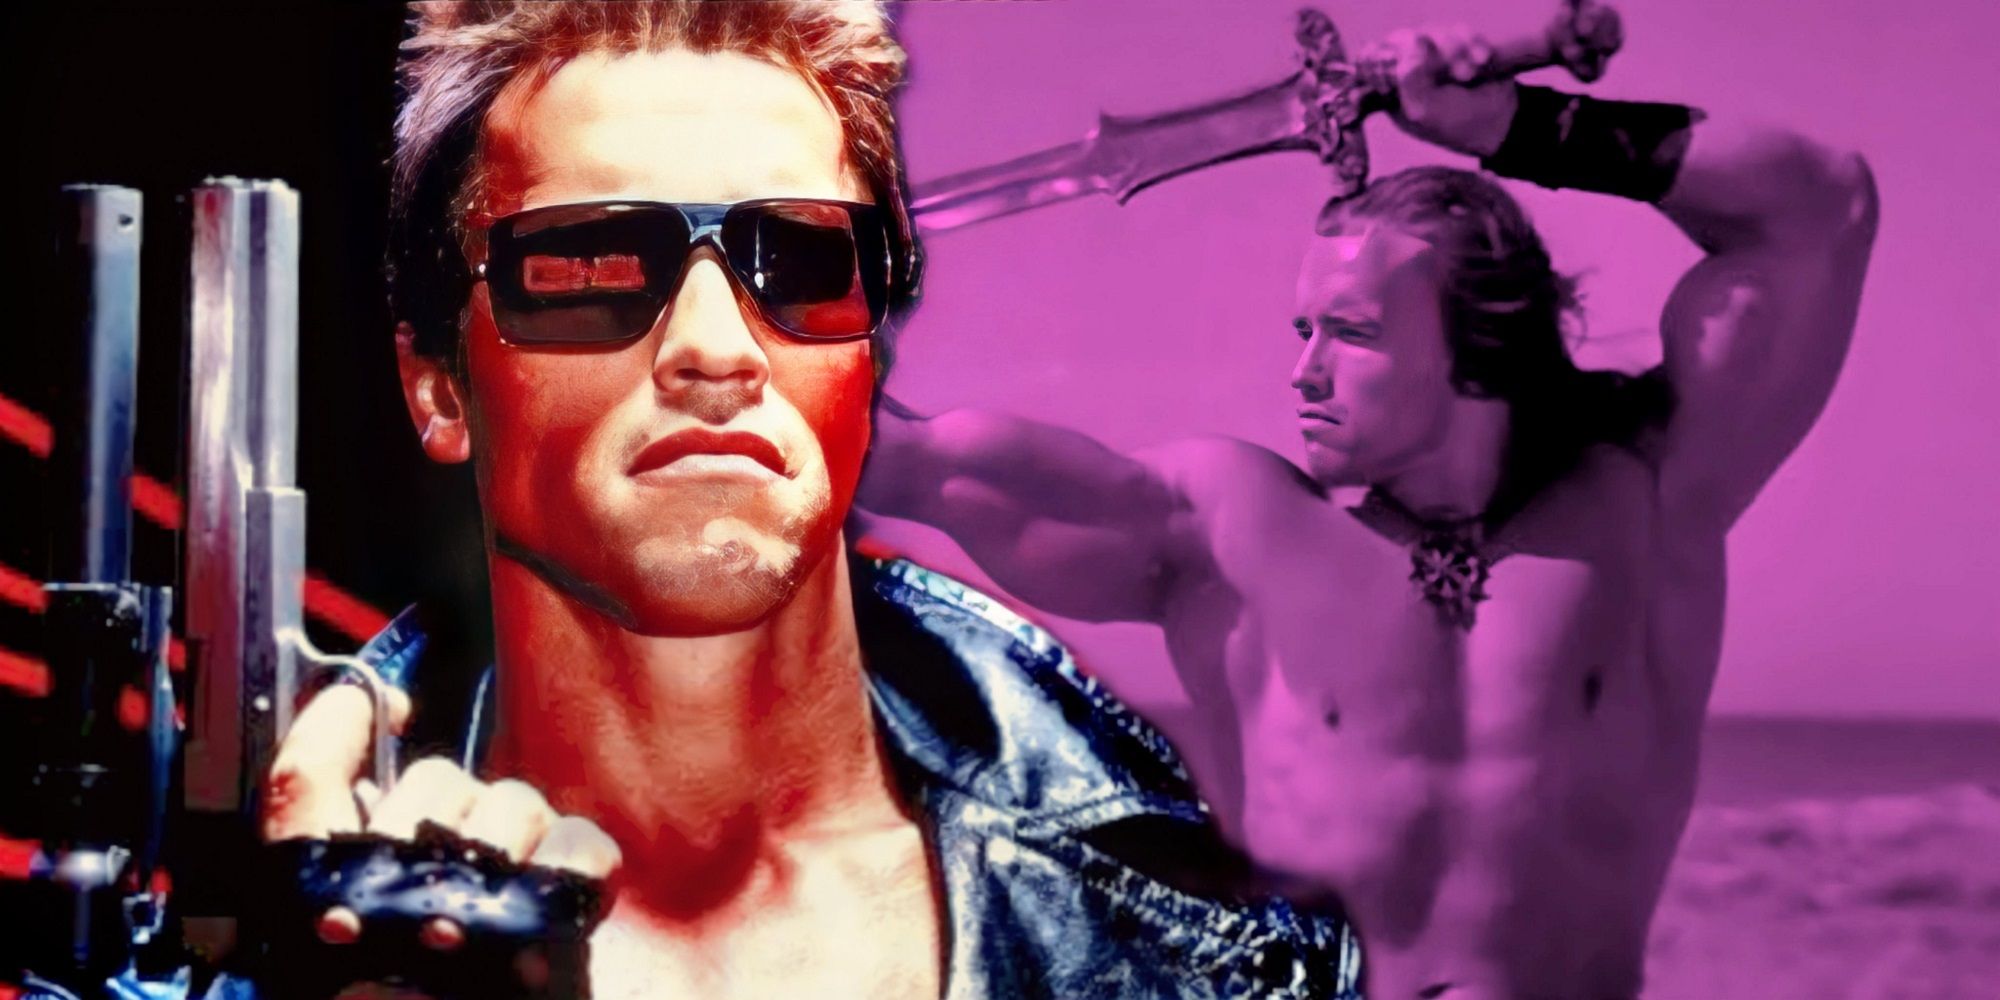 Arnold Schwarzenegger in The Terminator and Conan the Barbarian